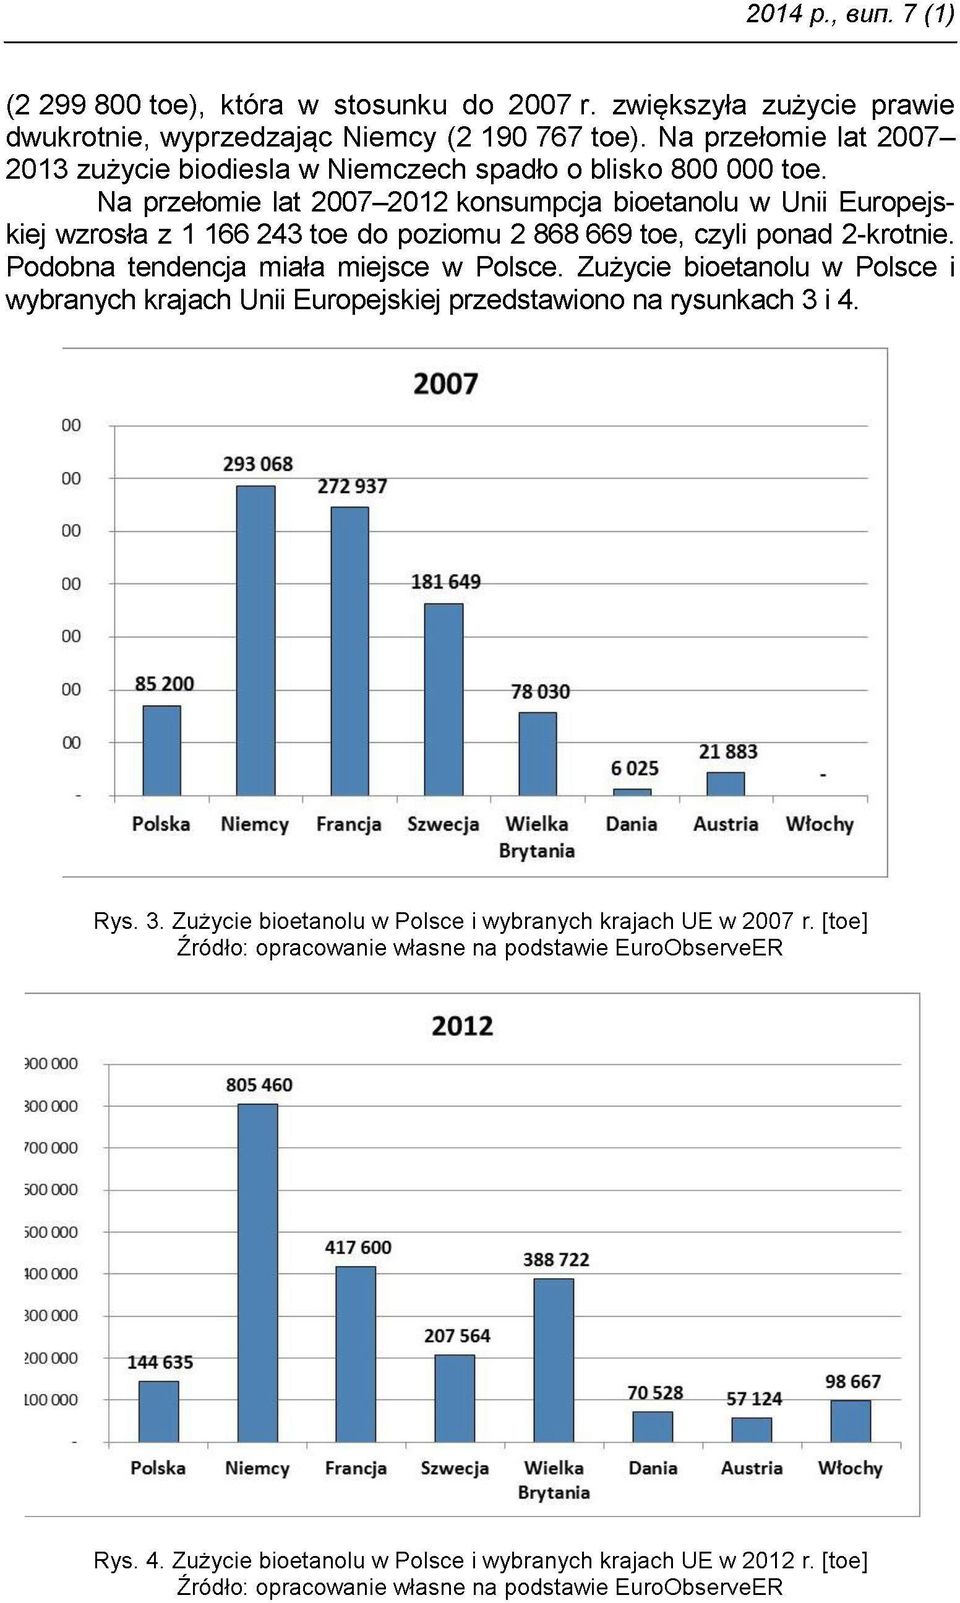 Na przełomie lat 2007 2012 konsumpcja bioetanolu w Unii Europejskiej wzrosła z 1 166 243 toe do poziomu 2 868 669 toe, czyli ponad 2-krotnie. Podobna tendencja miała miejsce w Polsce.